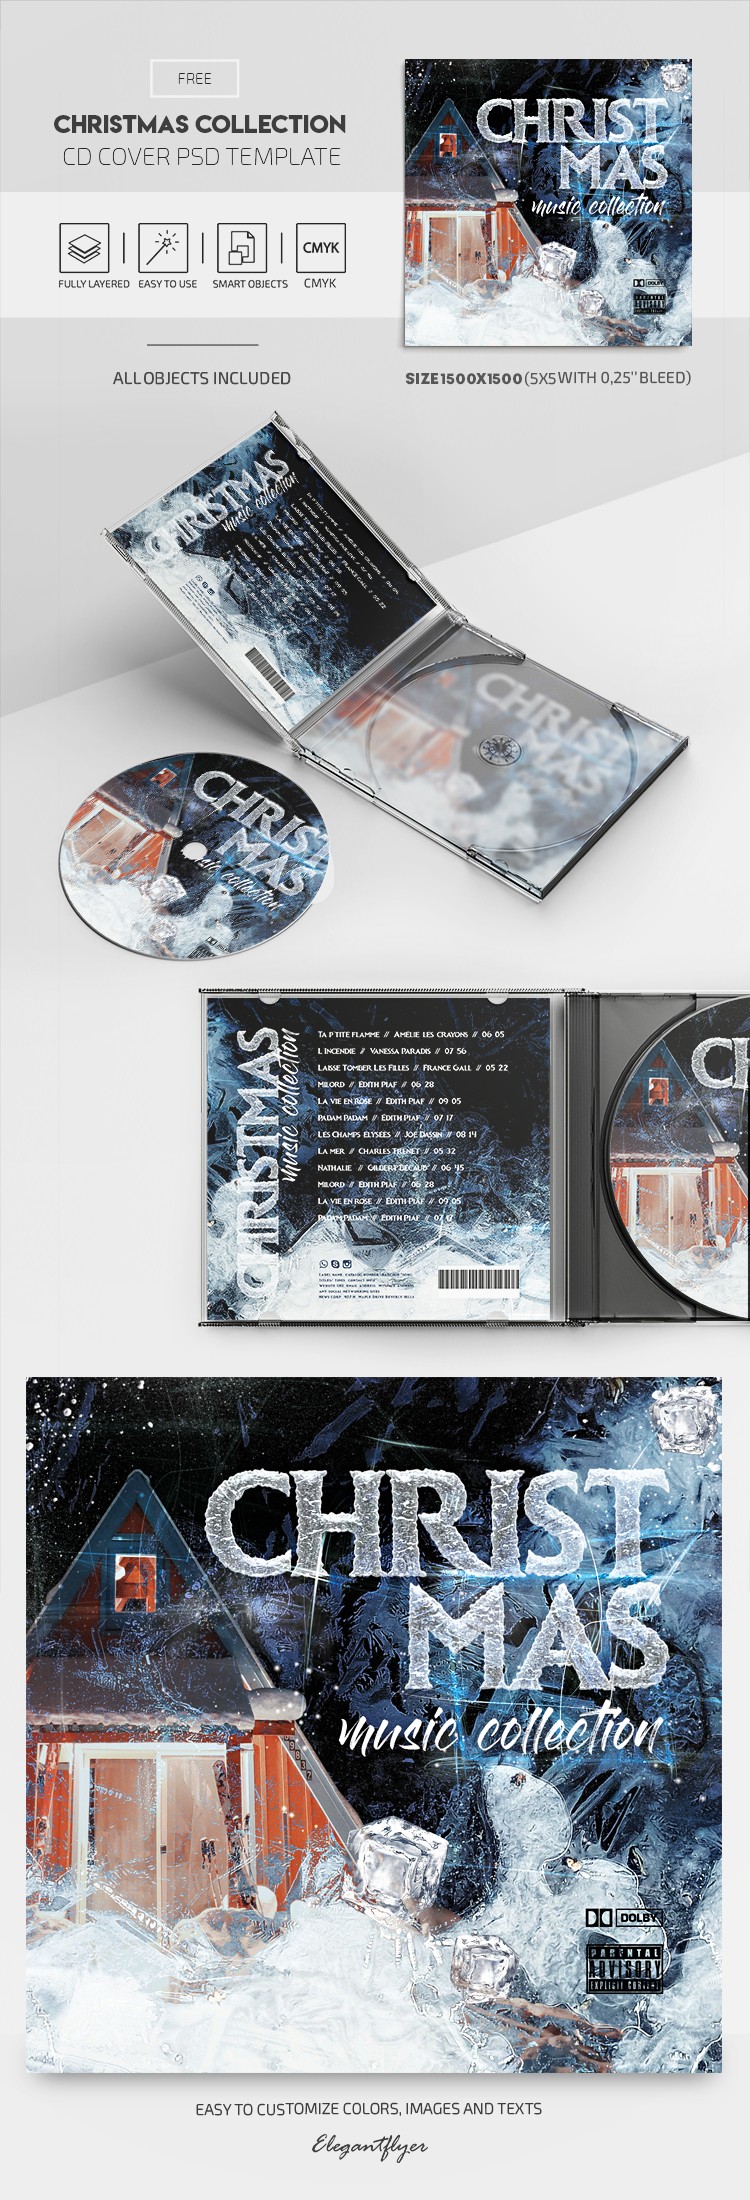 Couverture du CD de la collection de Noël by ElegantFlyer